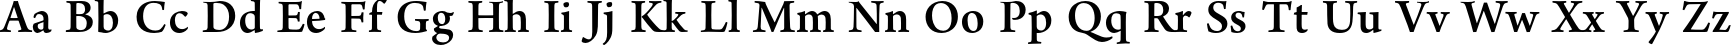 Пример написания английского алфавита шрифтом Adobe Naskh Medium